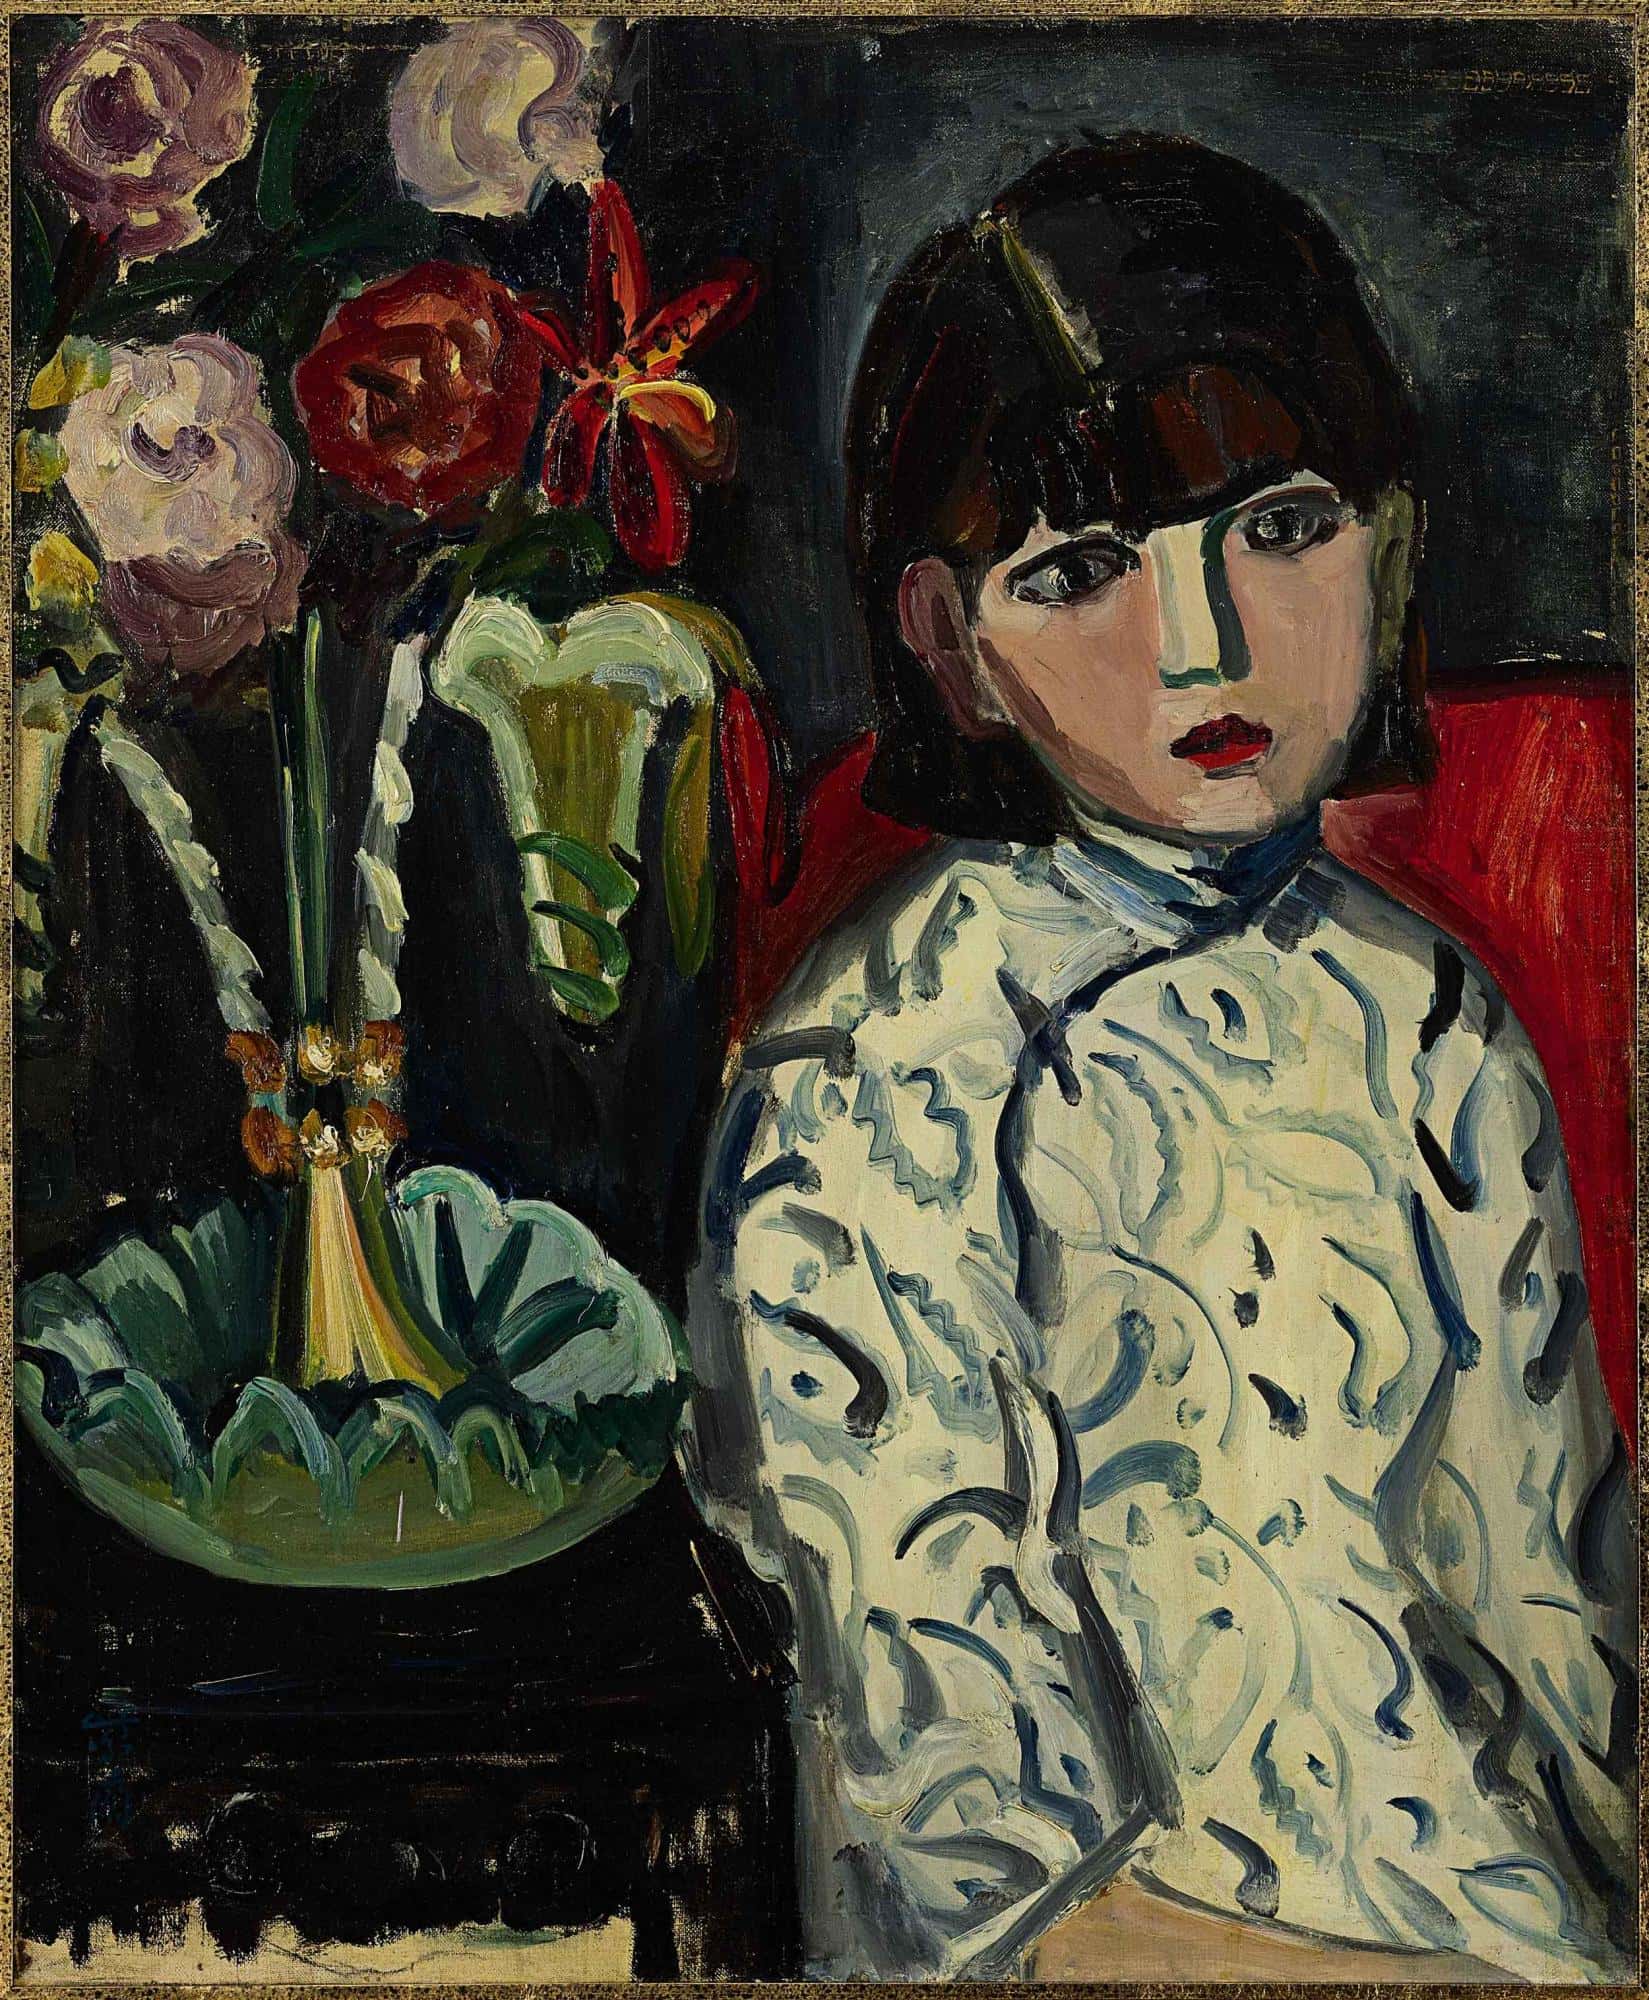 關紫蘭《少女》 1930年代作 油畫畫布,76.5 x 63 公分